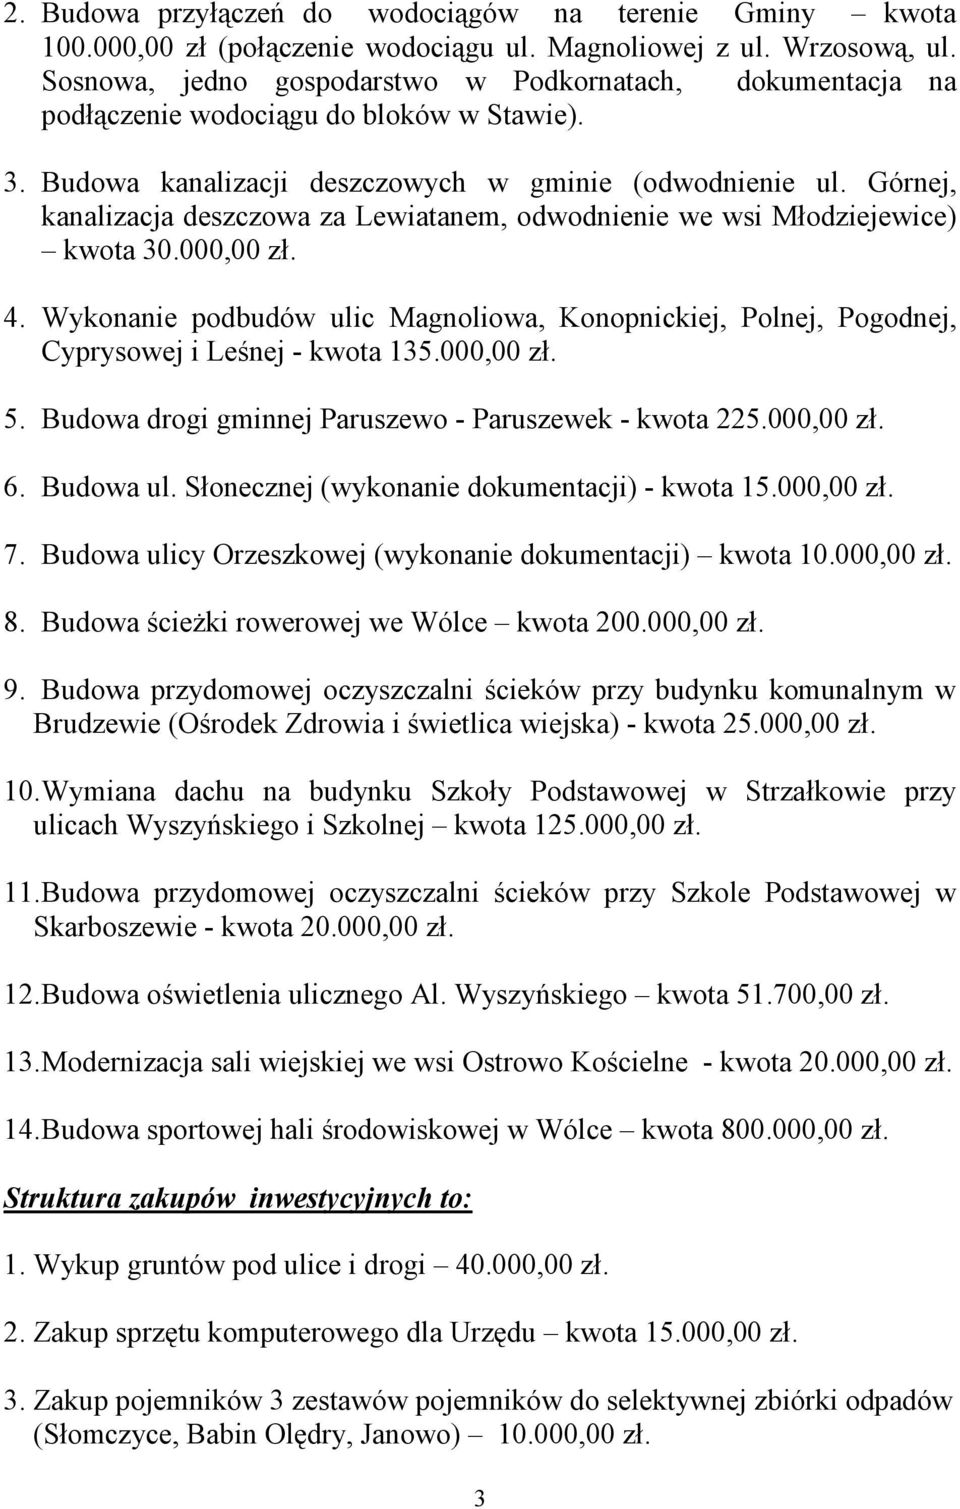 Górnej, kanalizacja deszczowa za Lewiatanem, odwodnienie we wsi Młodziejewice) kwota 30.000,00 zł. 4.